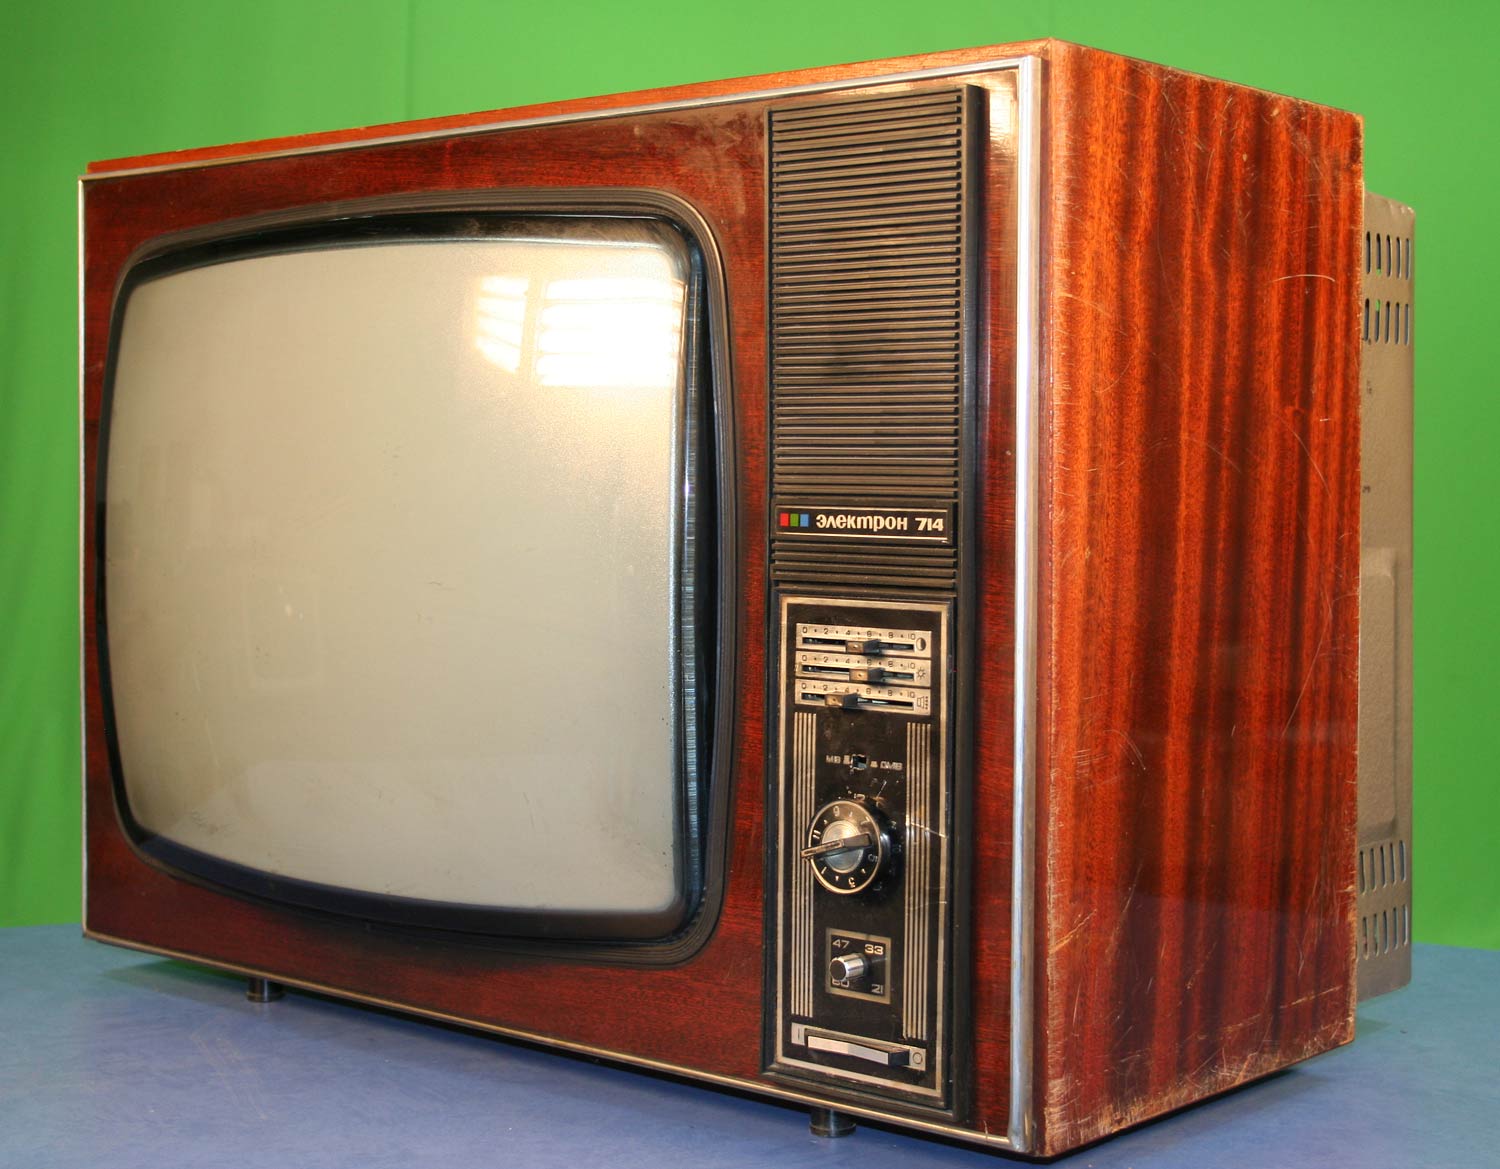 Телевизор в ссср появился каком году. Телевизор электрон 716. Цветной телевизор электрон 714. Цветной телевизор Рубин 714. Советский цветной телевизор«Рубин-714.